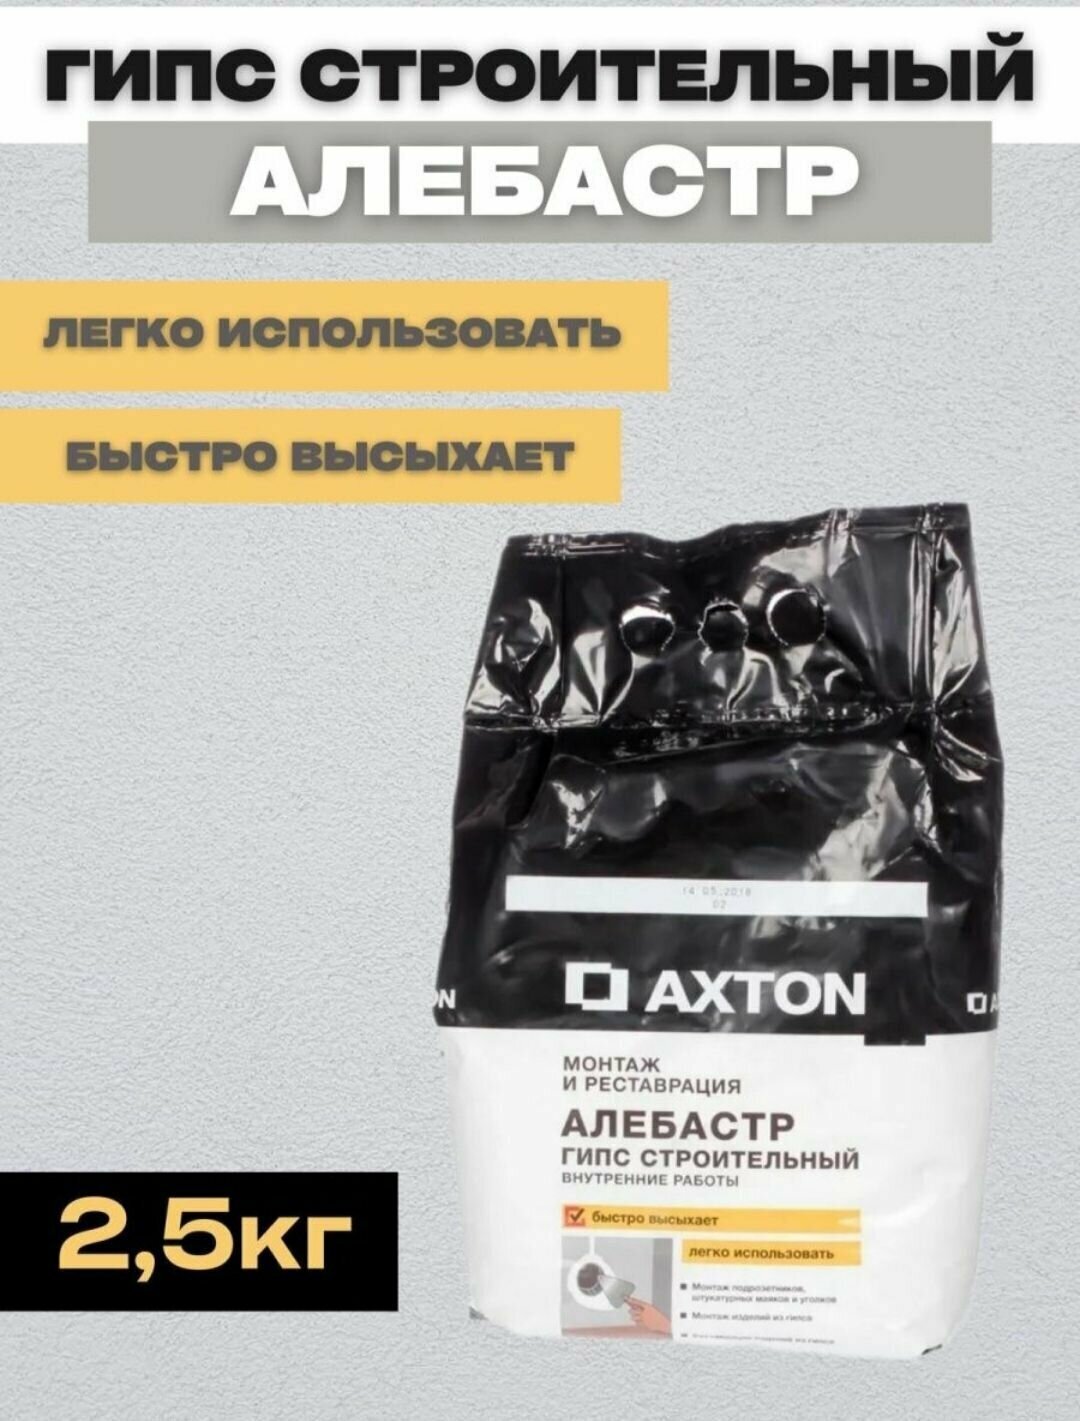 Алебастр Axton гипс строительный 25 кг. для внутренних работ монтажа и реставрации.